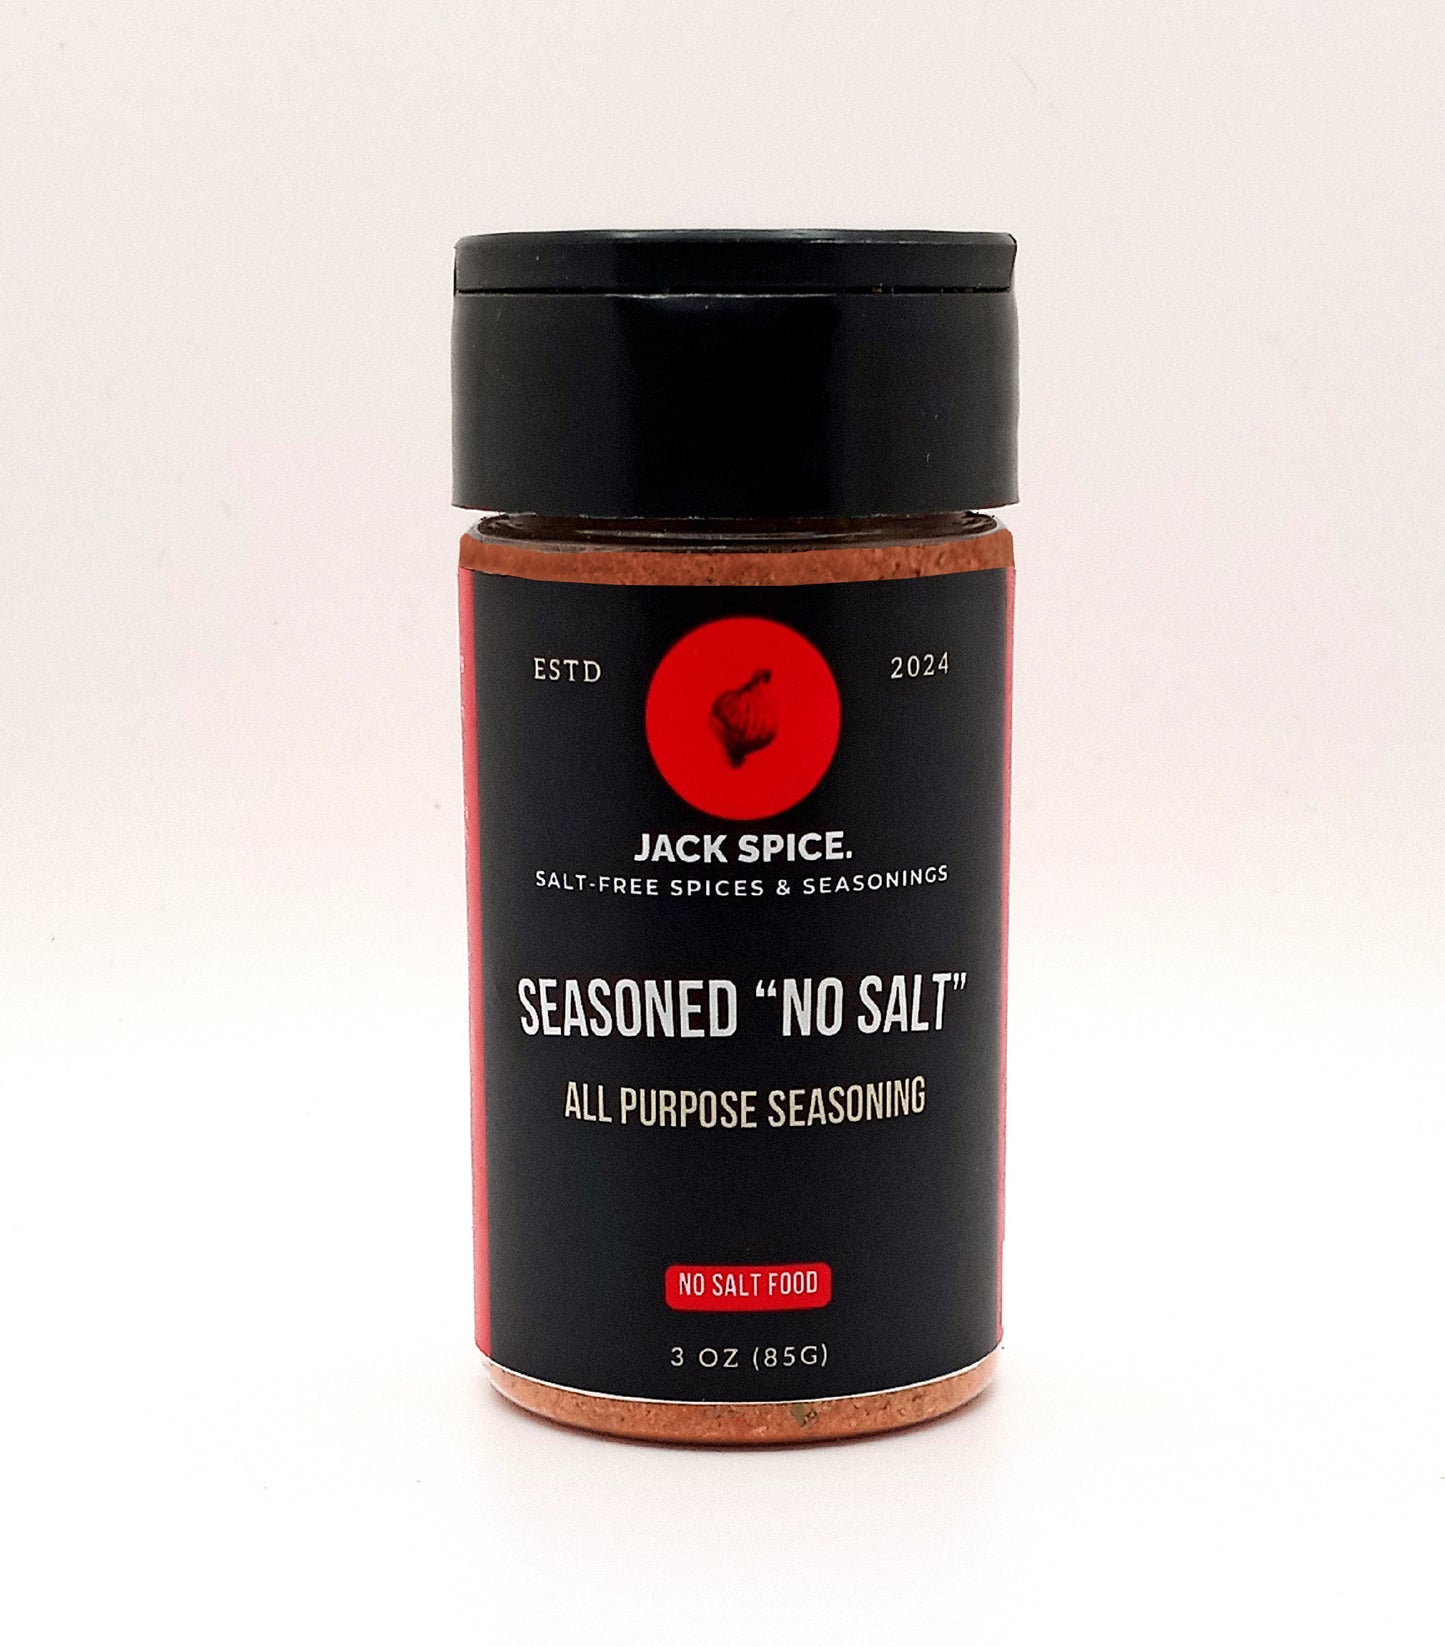 Jack Spice Seasoned "No Salt" All Purpose Seasoning